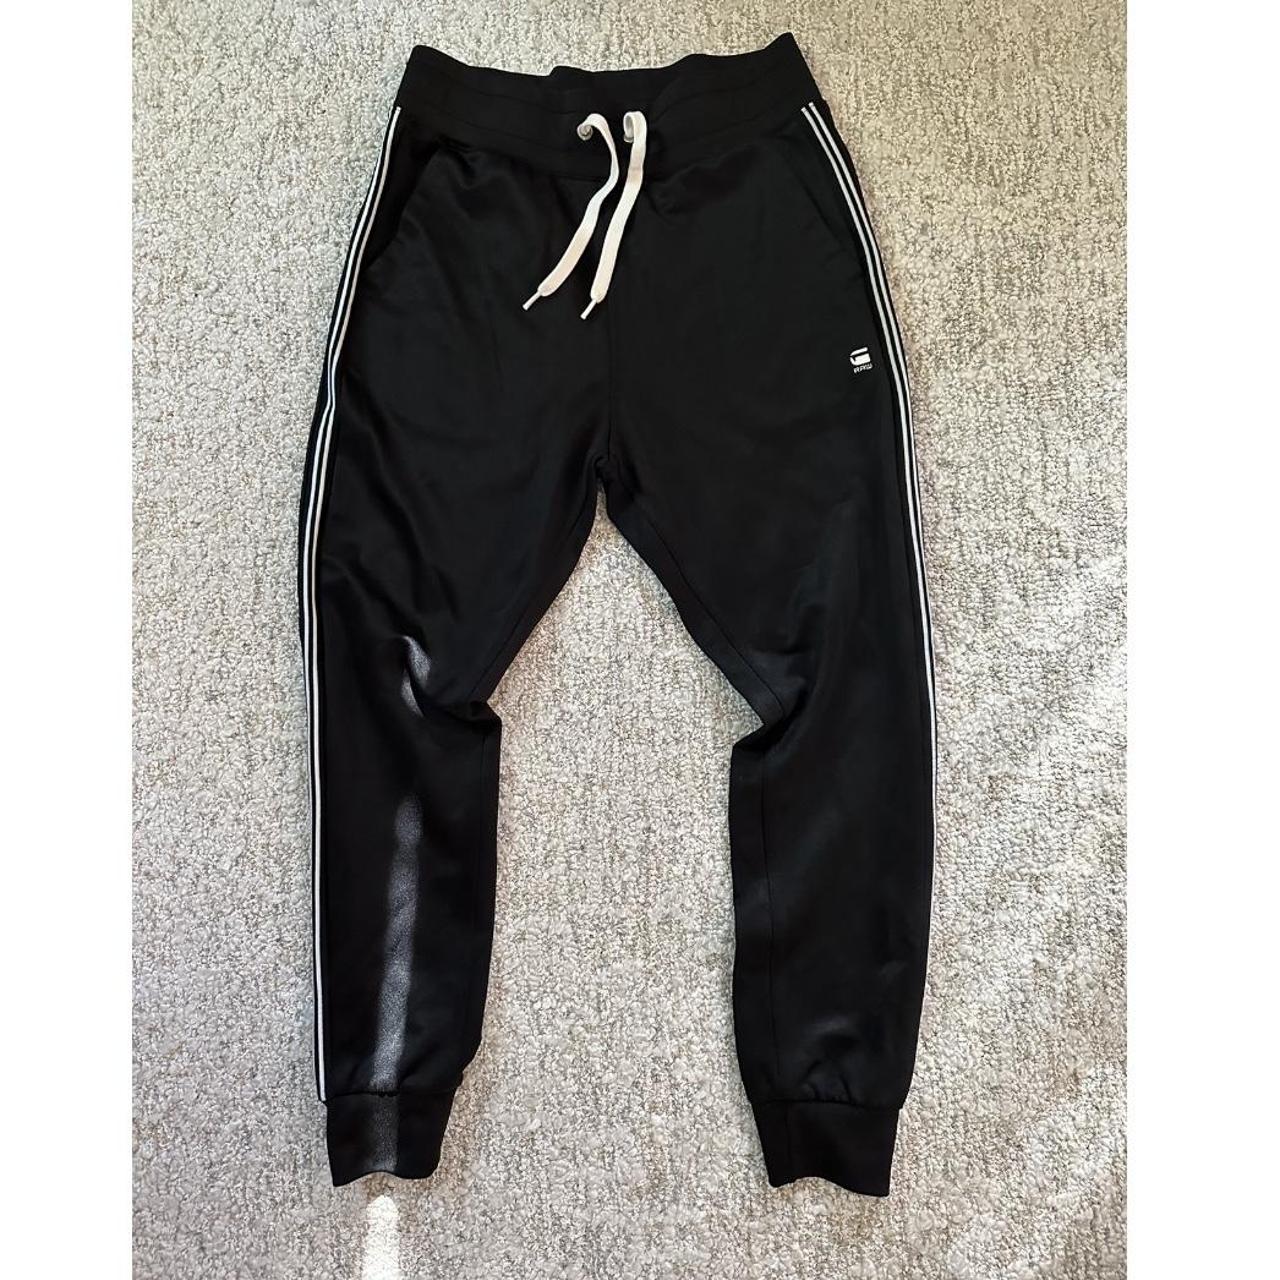 G Star Raw Verdan Sweat Track Pants Wmns XL | eBay